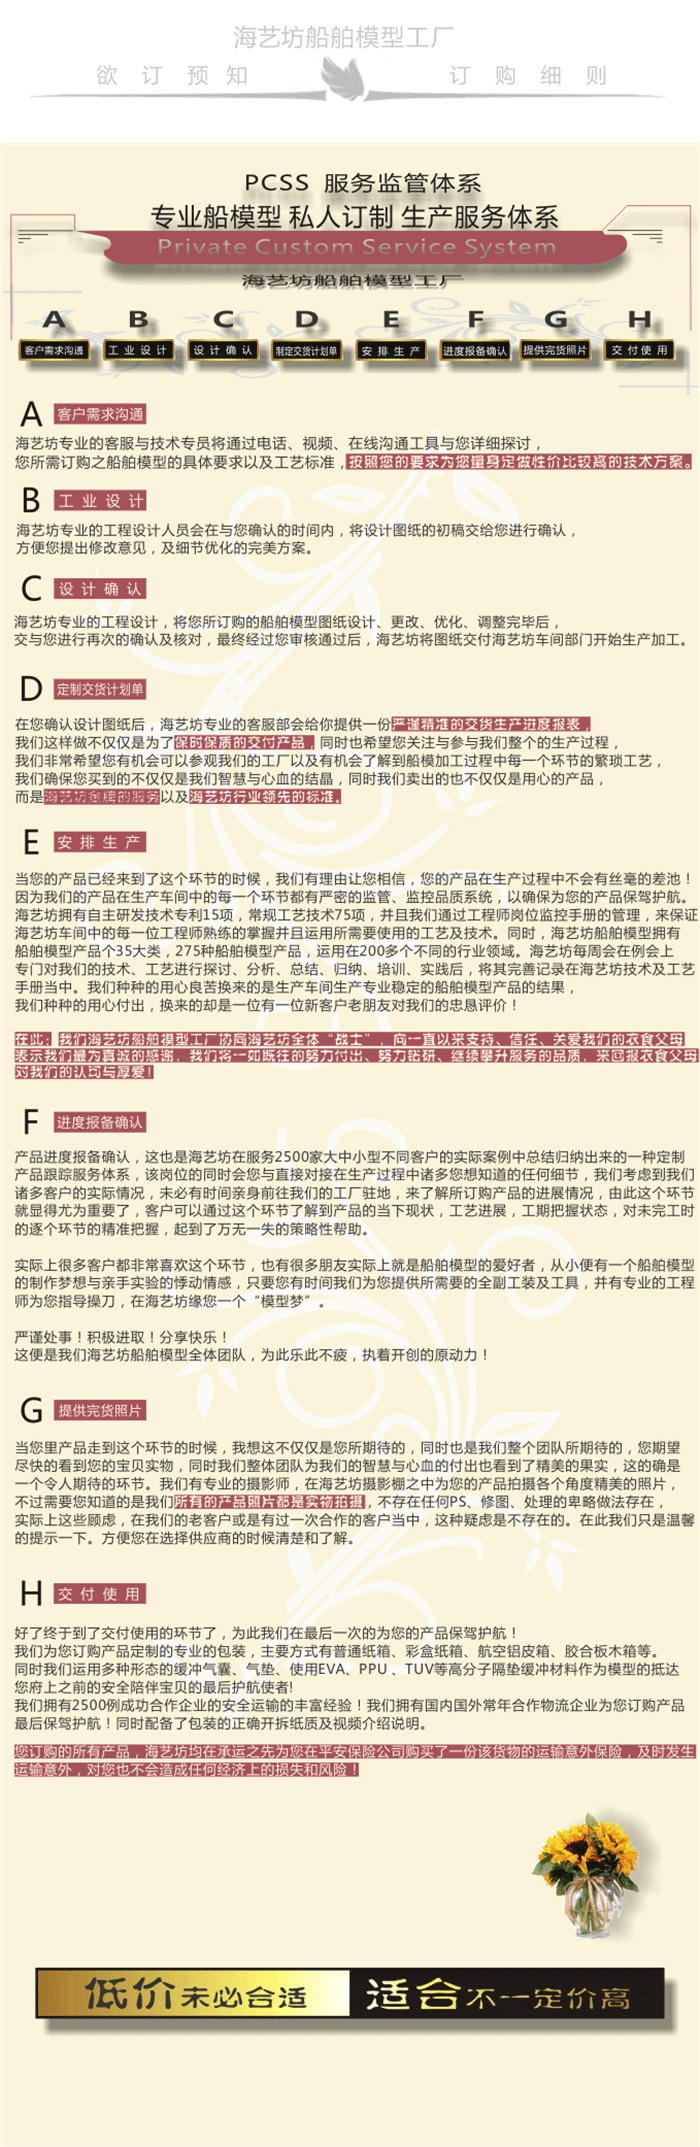 1:30东方国际（广州）有限公司集装箱模型定做